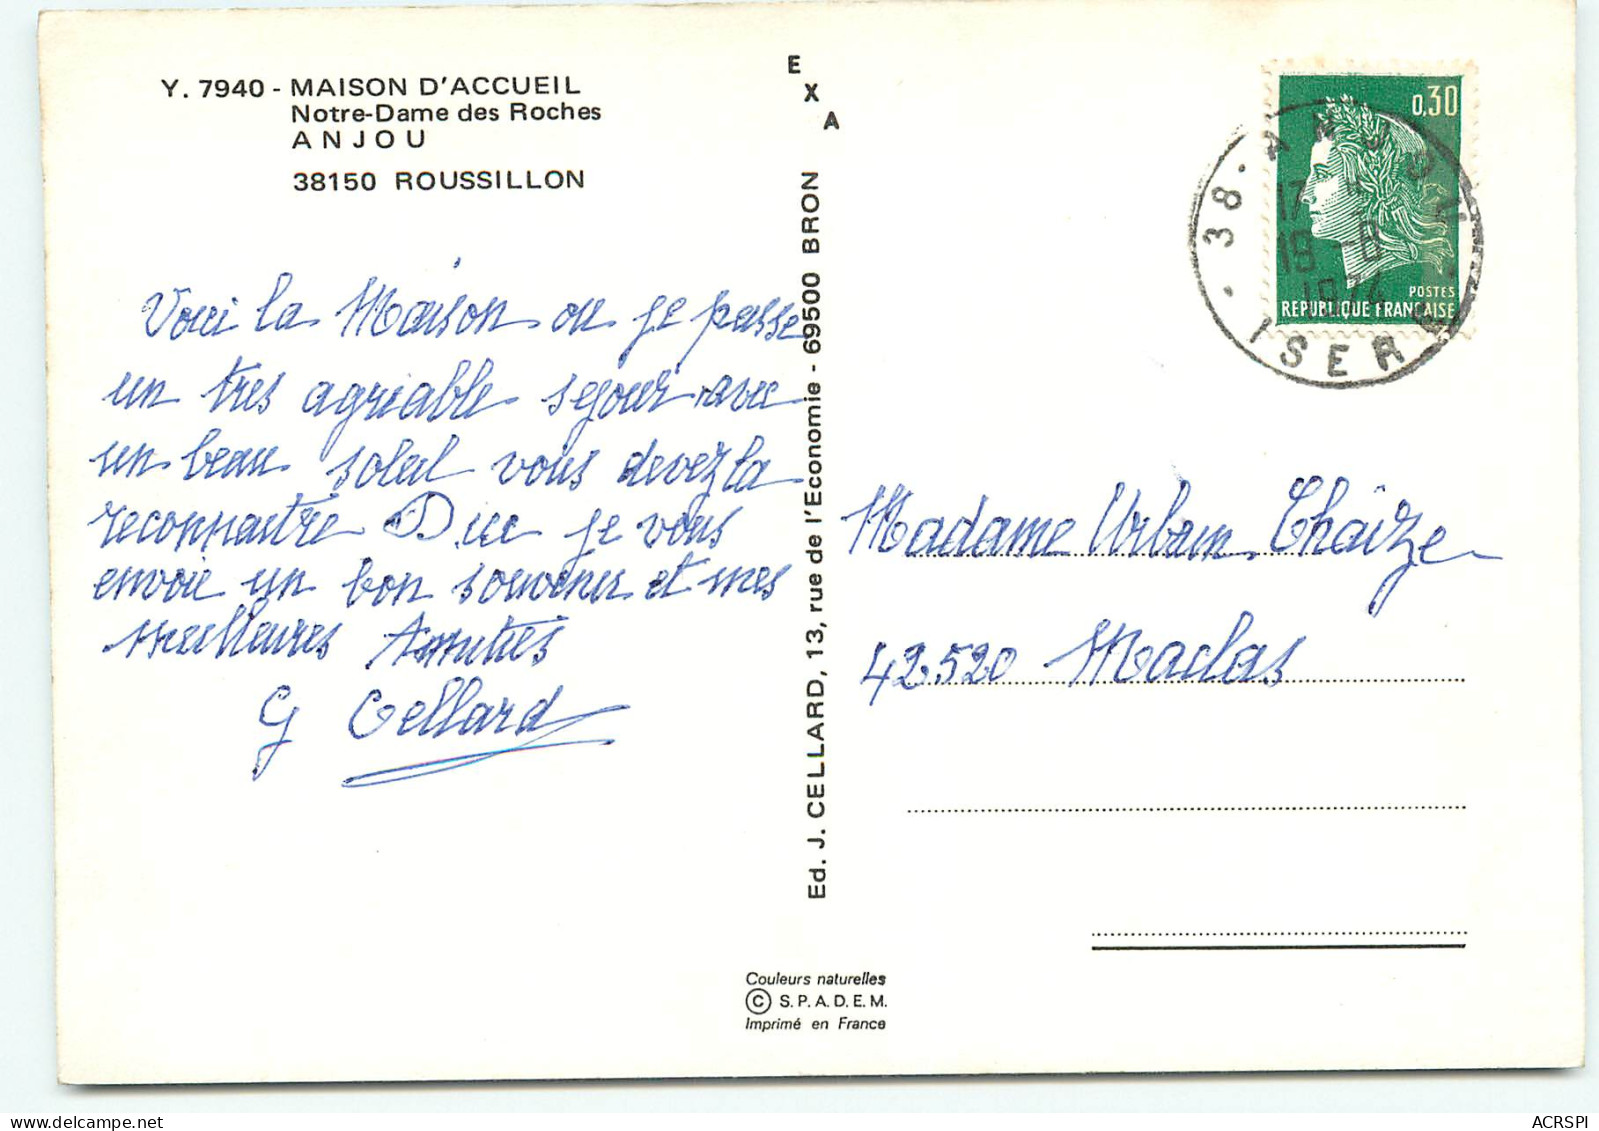 ROUSSILLON  Maison D'accueil Notre Dame Des Roches ANJOU édition Cellard  UU1508 - Roussillon